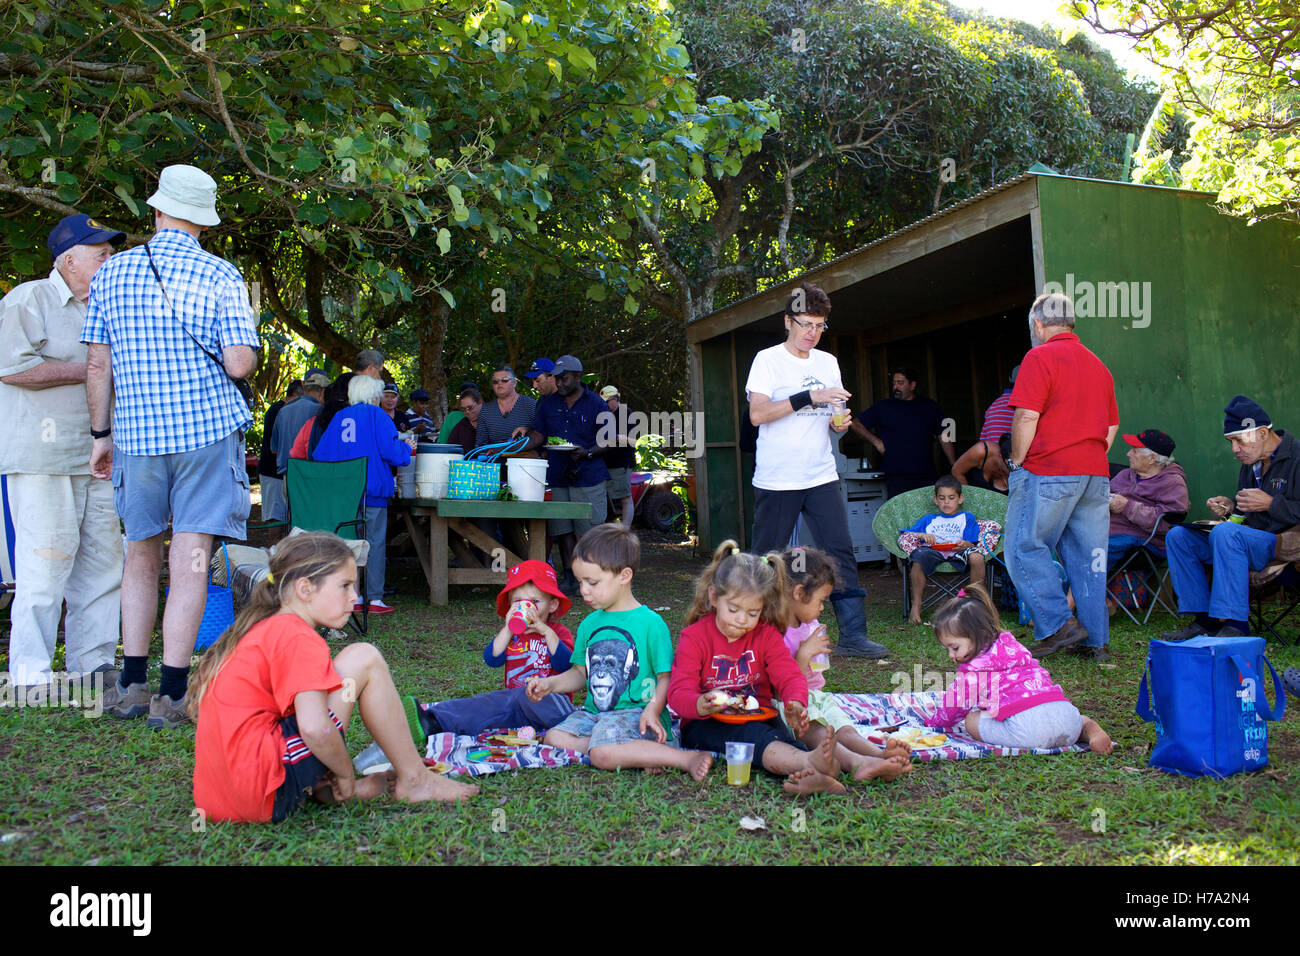 Pitcairn, Söhne von Meuterern! -04/06/2012 - Pitcairn / Pitcairn - Gartenparty auf Aute Tal auf Pitcairn Insel - Olivier Goujon / Le Pictorium Stockfoto